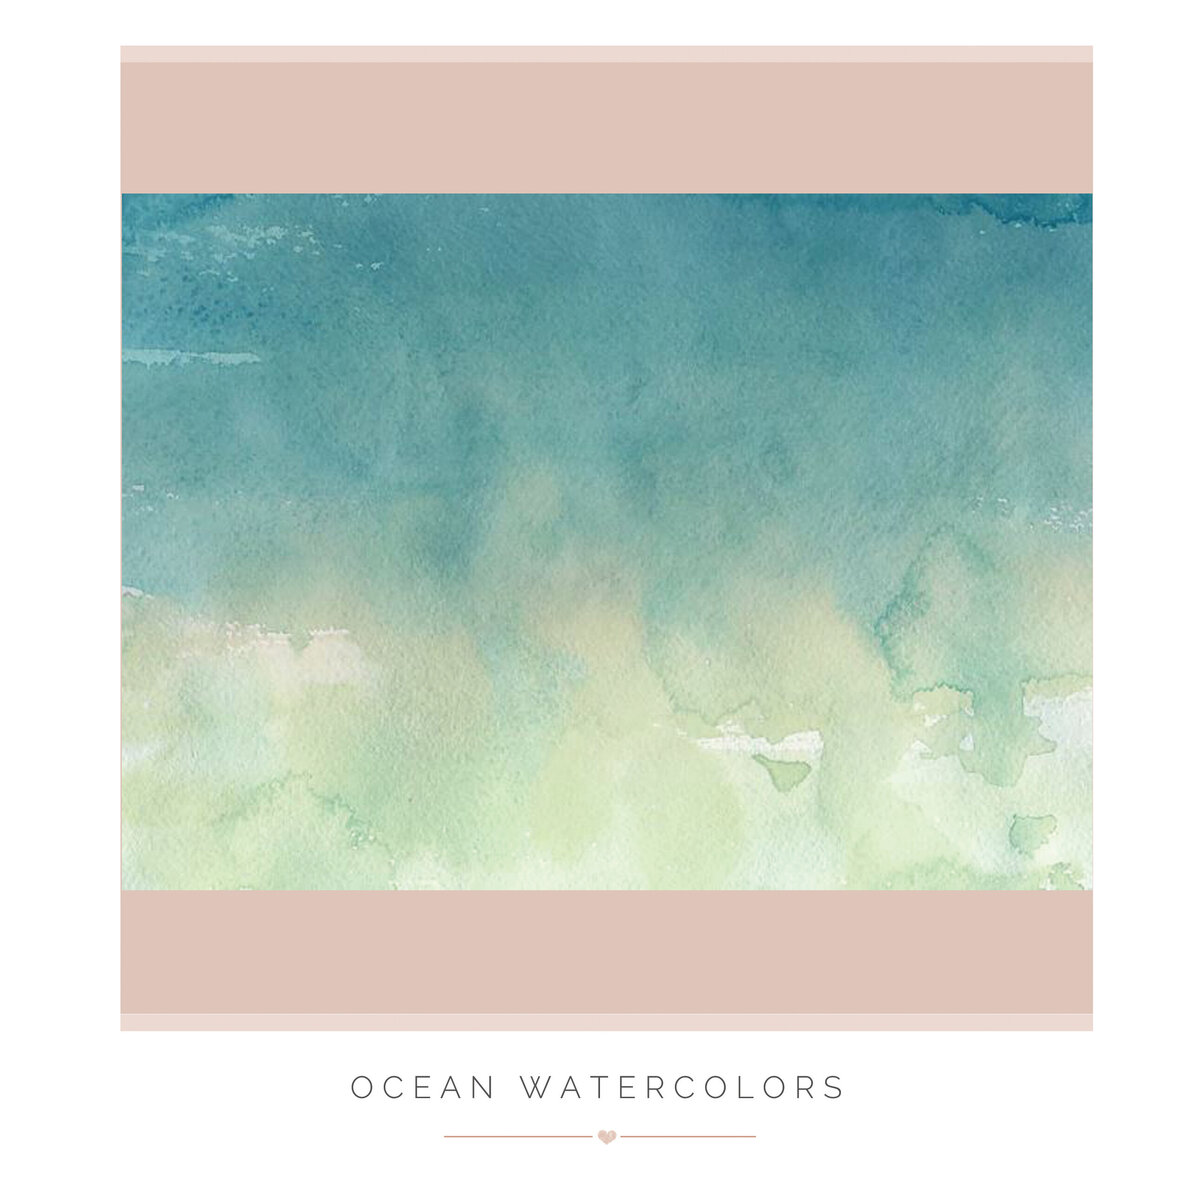 Ocean Watercolors